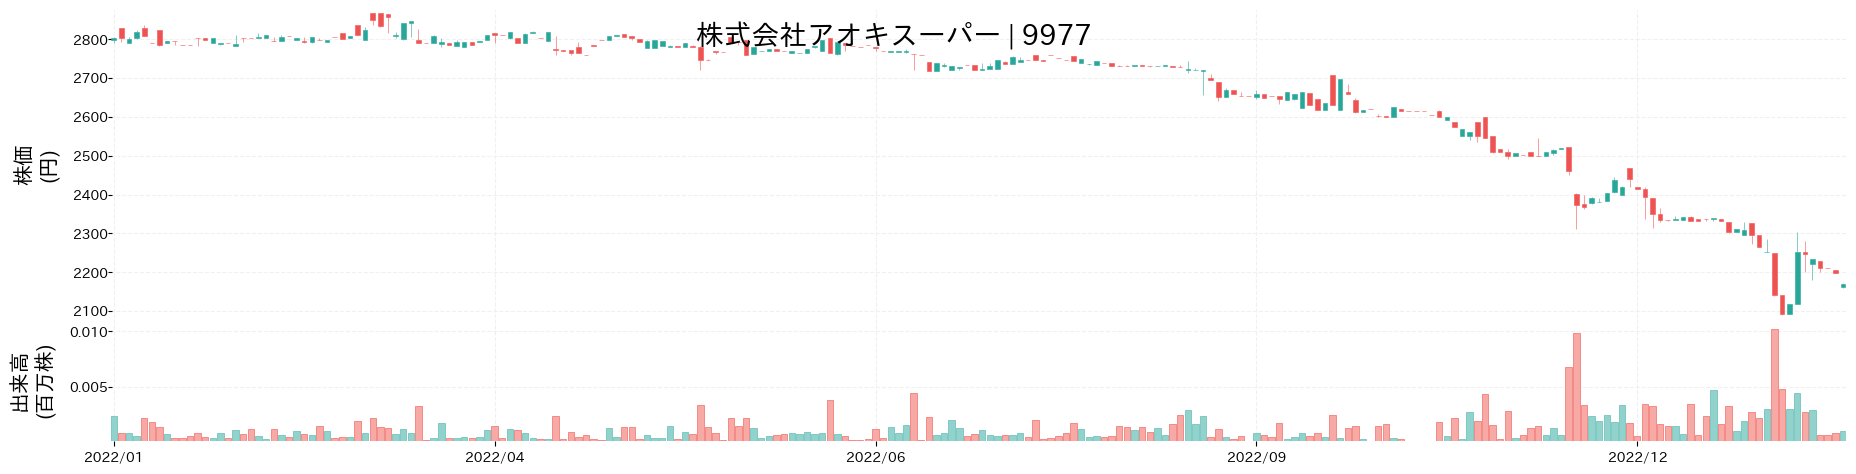 アオキスーパーの株価推移(2022)